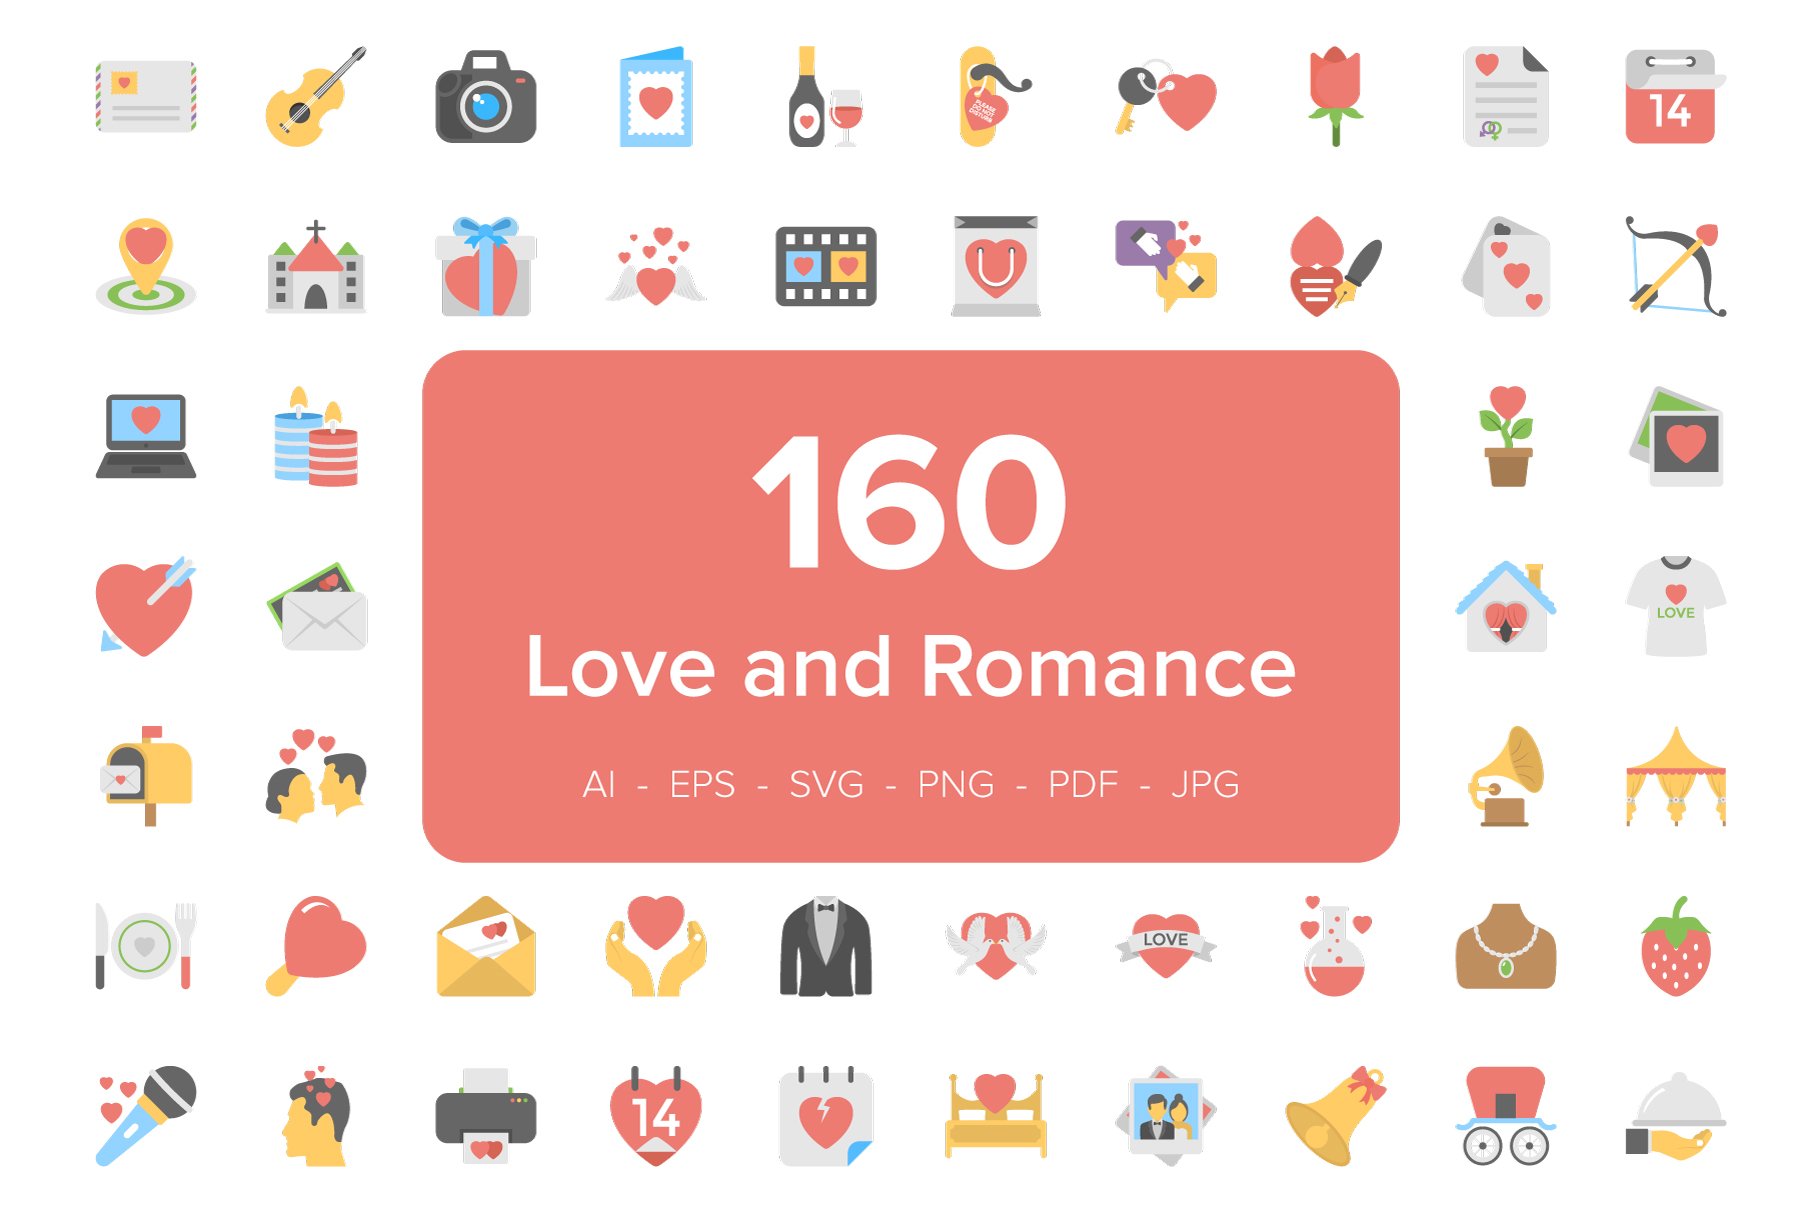 浪漫的爱情图标素材 160 Love and Romance